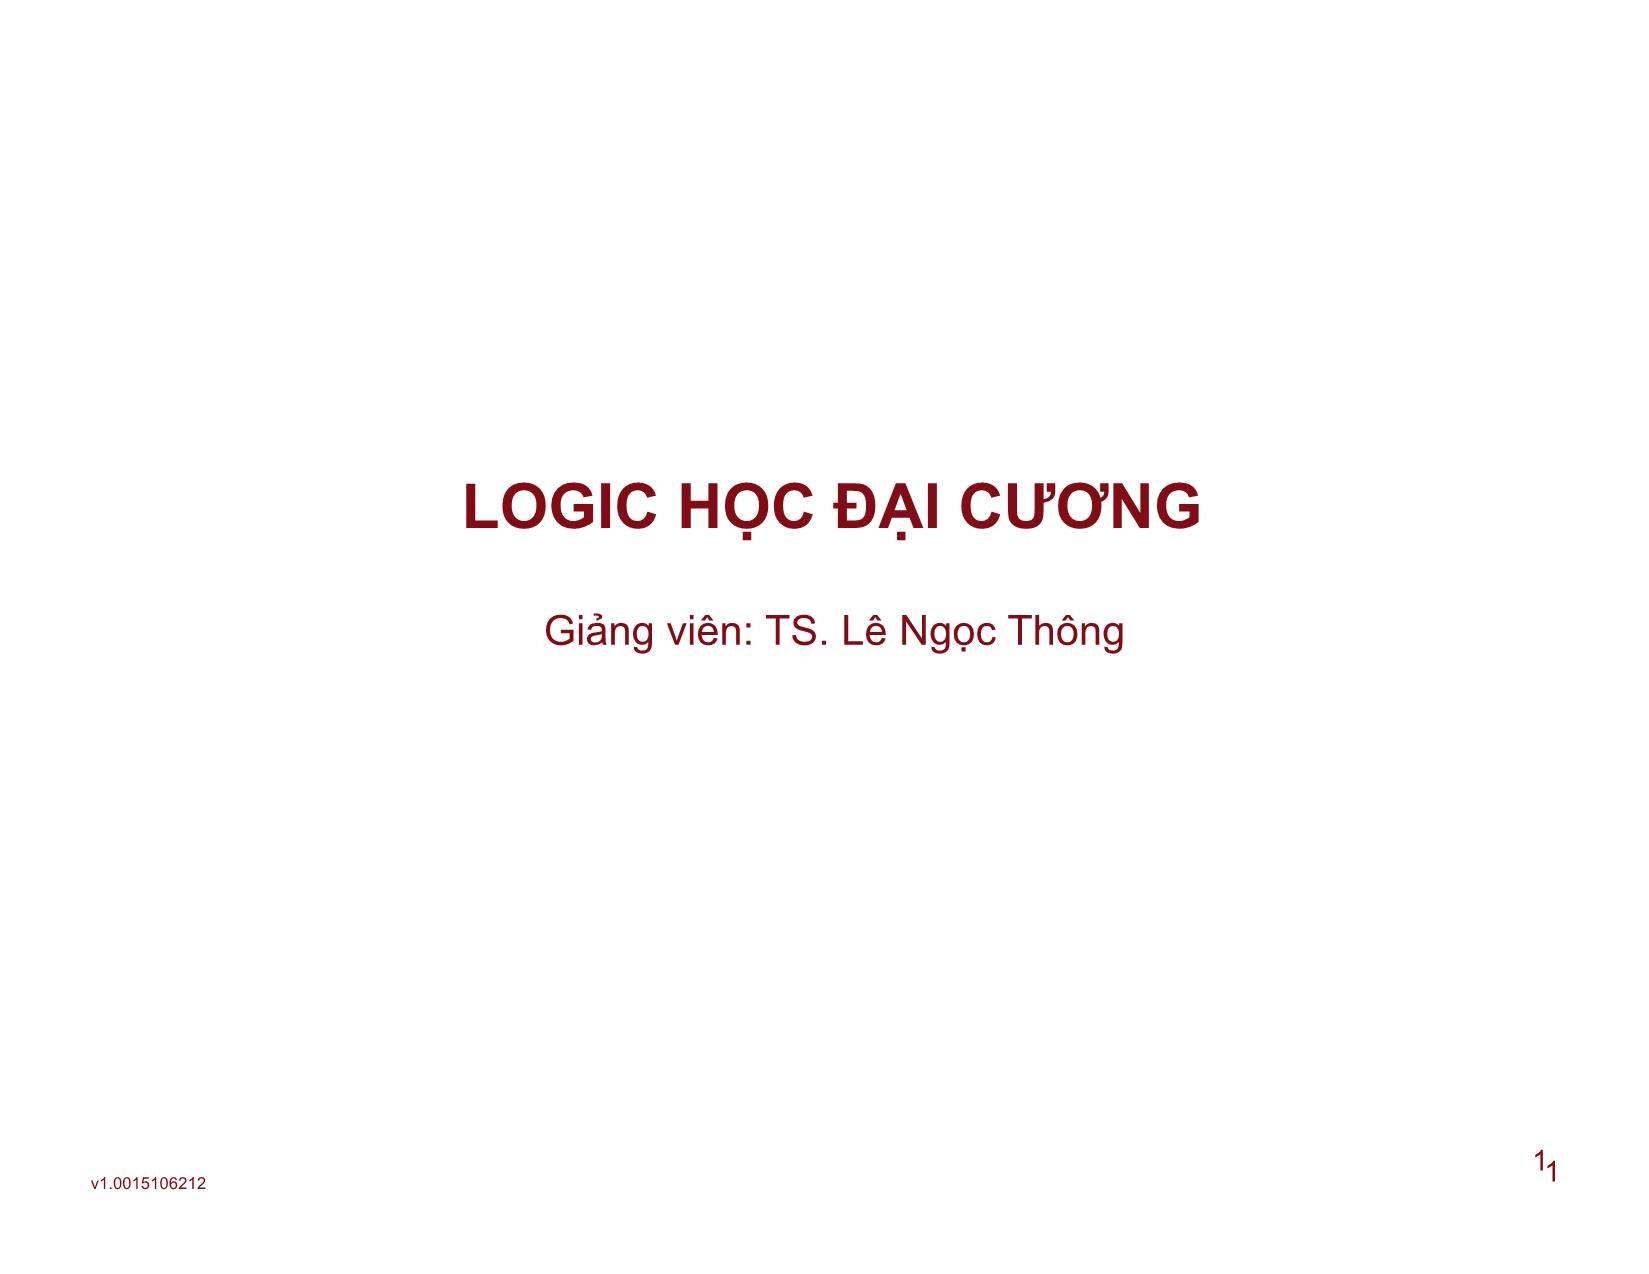 Logic học đại cương - Bài 4: Hình thức tư duy suy luận trang 1